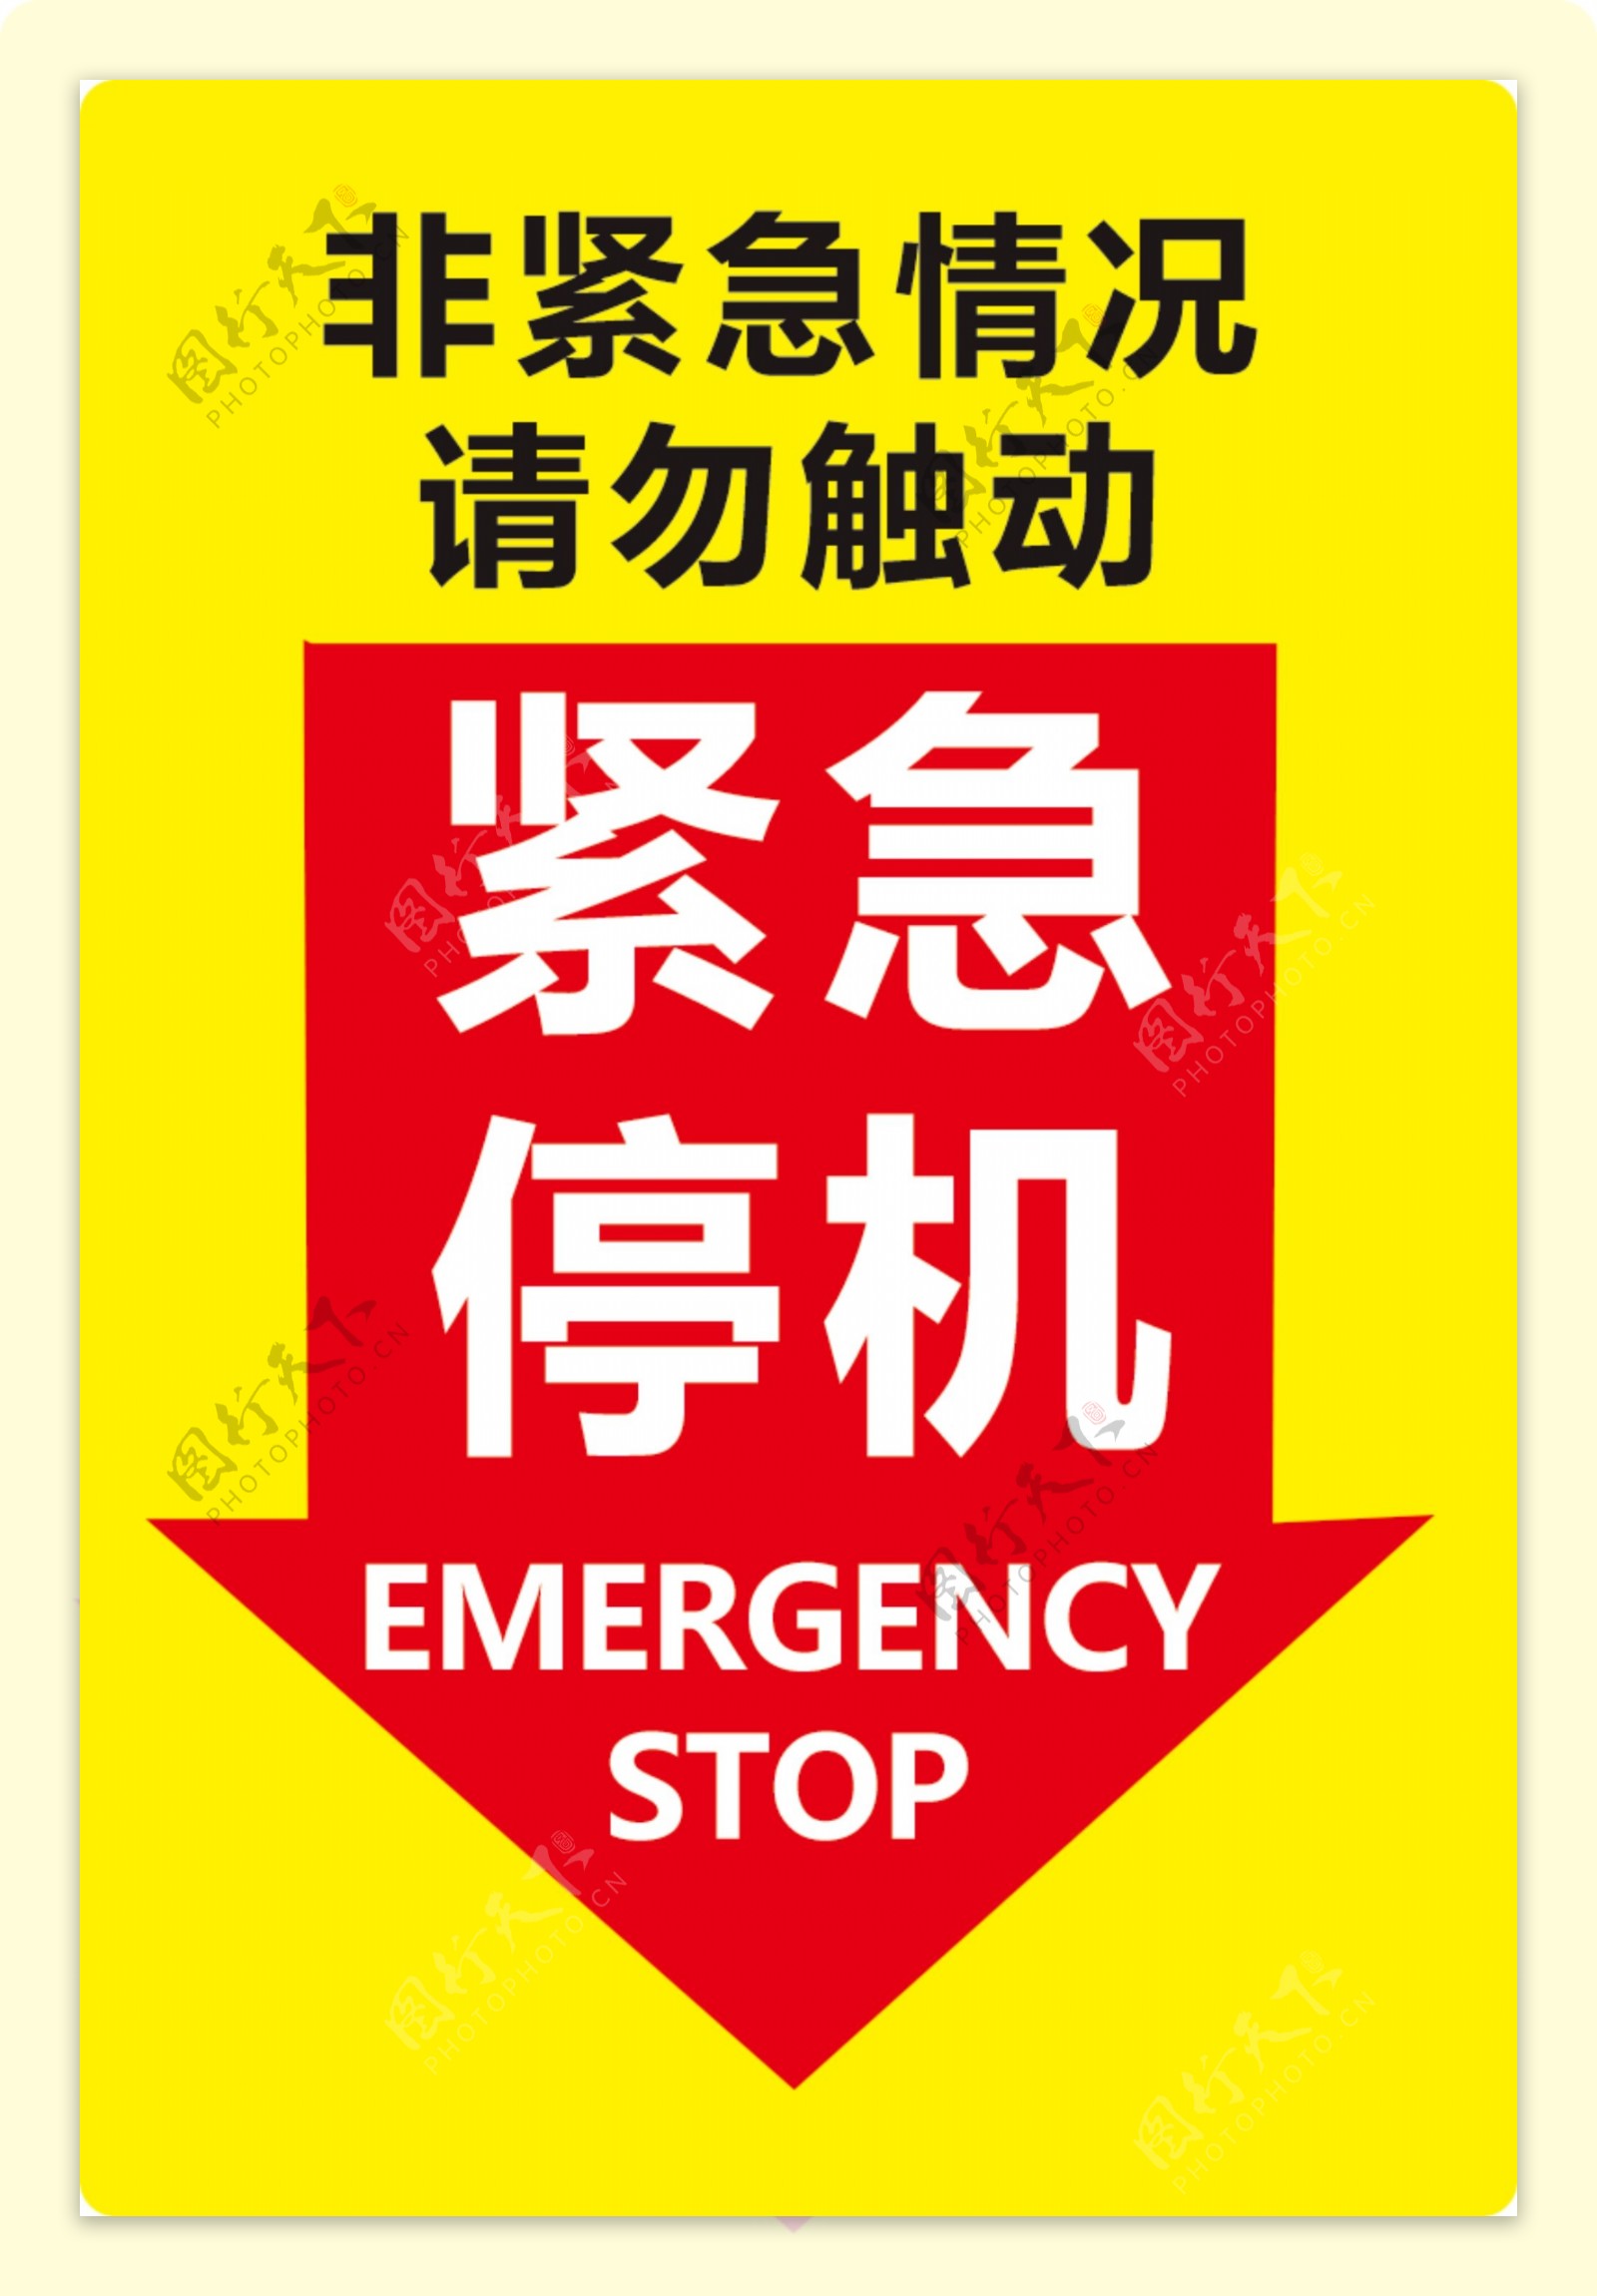 电梯紧急停机按钮指示